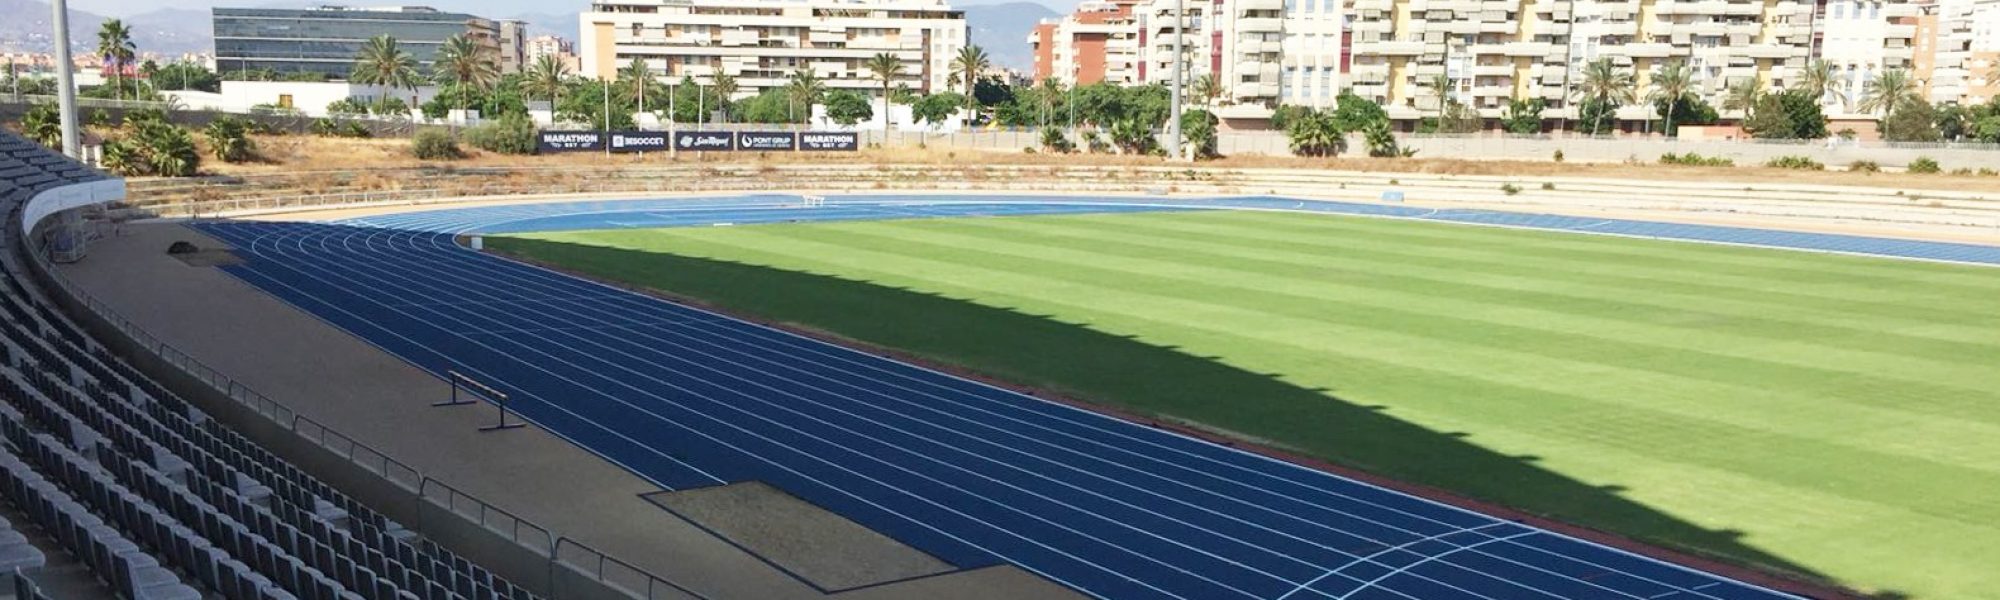 Estadio de Atletismo 'Ciudad de Málaga', equipado con Sportflex Super X 720.